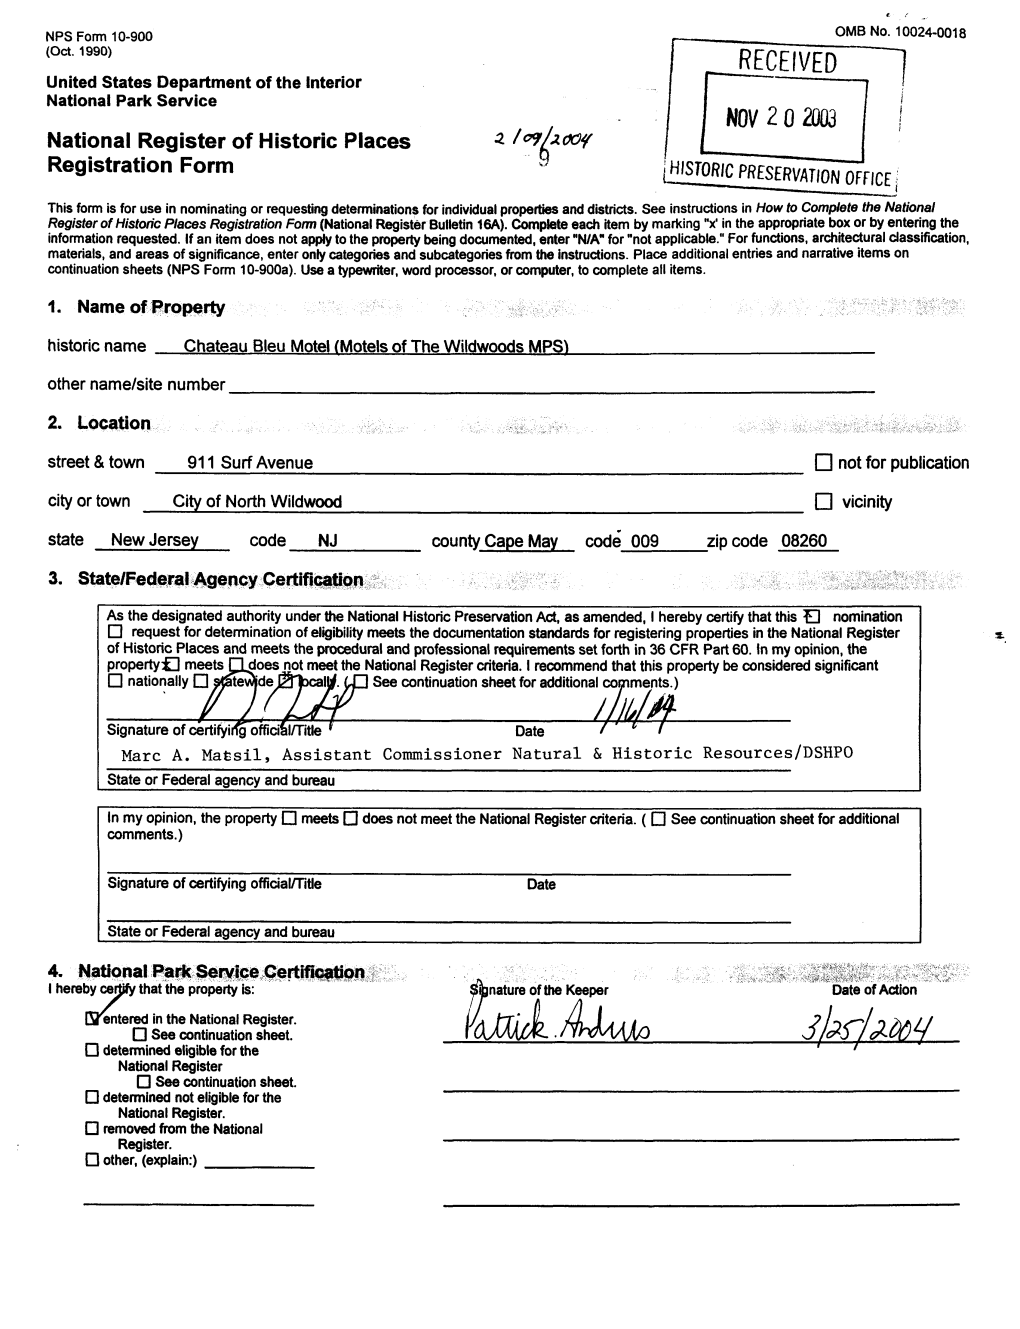 NOV 2 0 2003 National Register of Historic Places 9 Registration Form Llsjoric PRESERVATION OFFICE